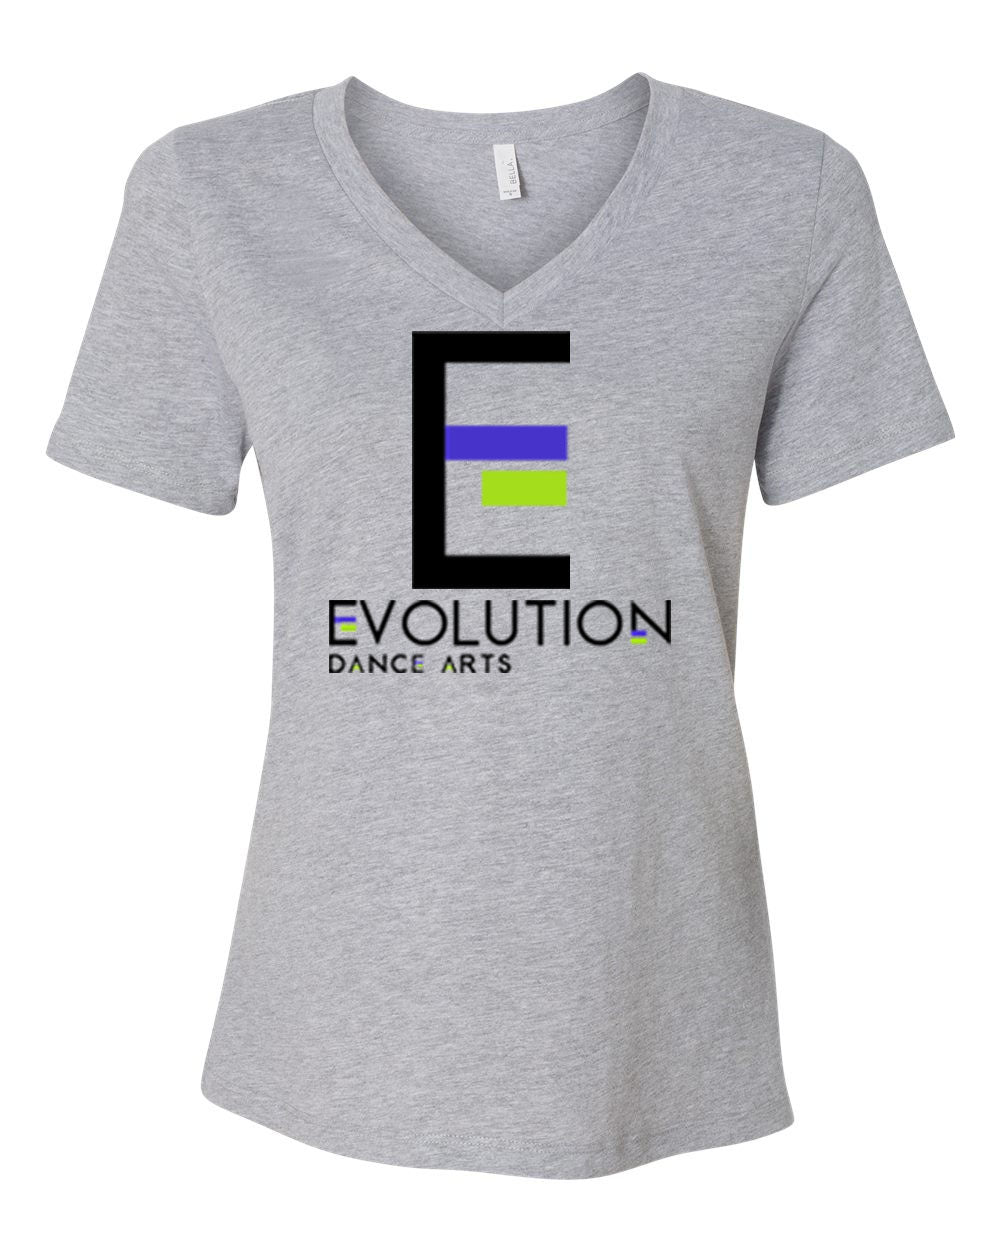 Evolution Dance Arts Design 2 V-neck T-shirt